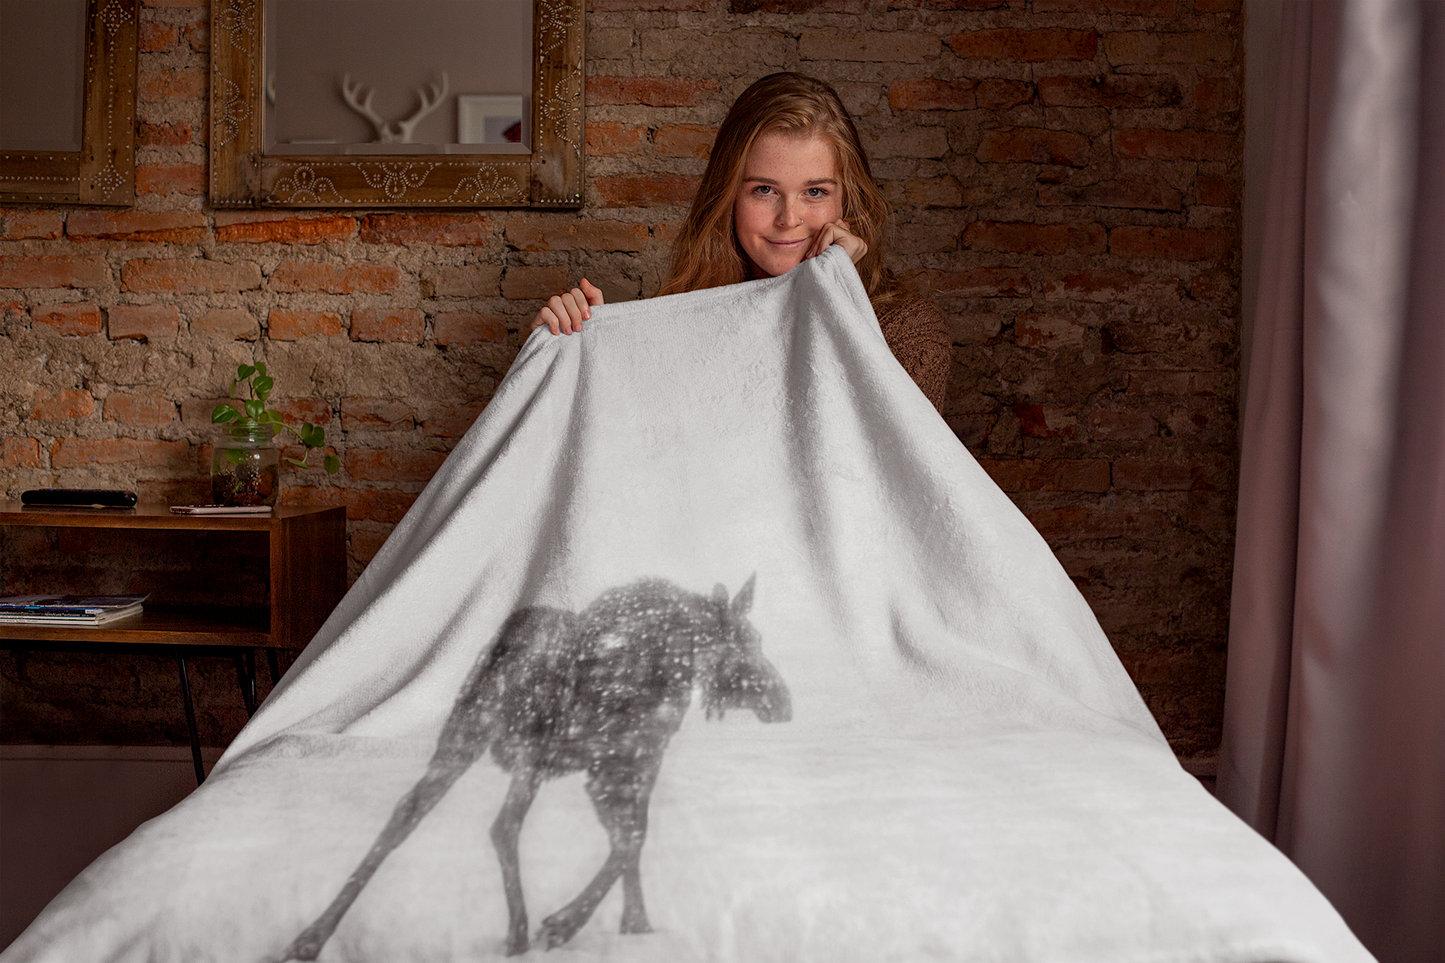 Baby Moose 'Winter' Plush Blanket